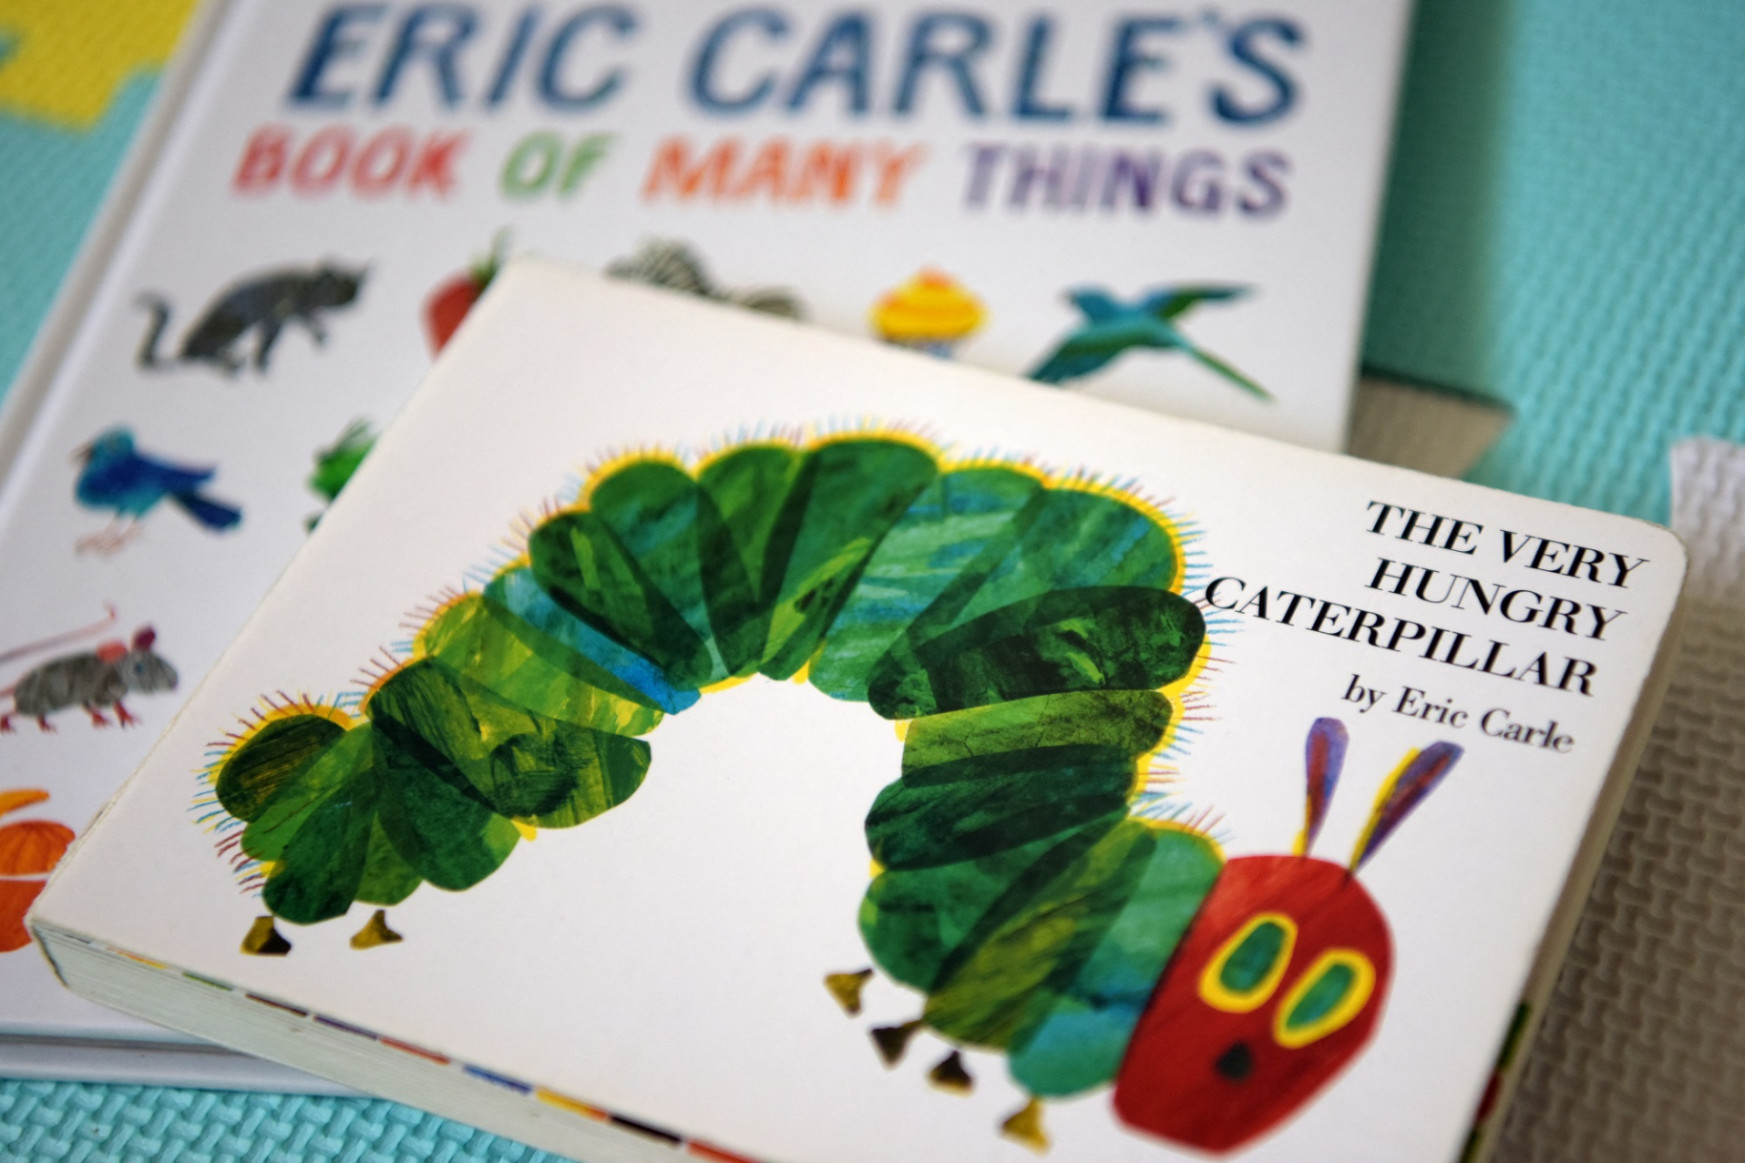 Meghalt Eric Carle, A telhetetlen hernyócska című mesekönyv írója